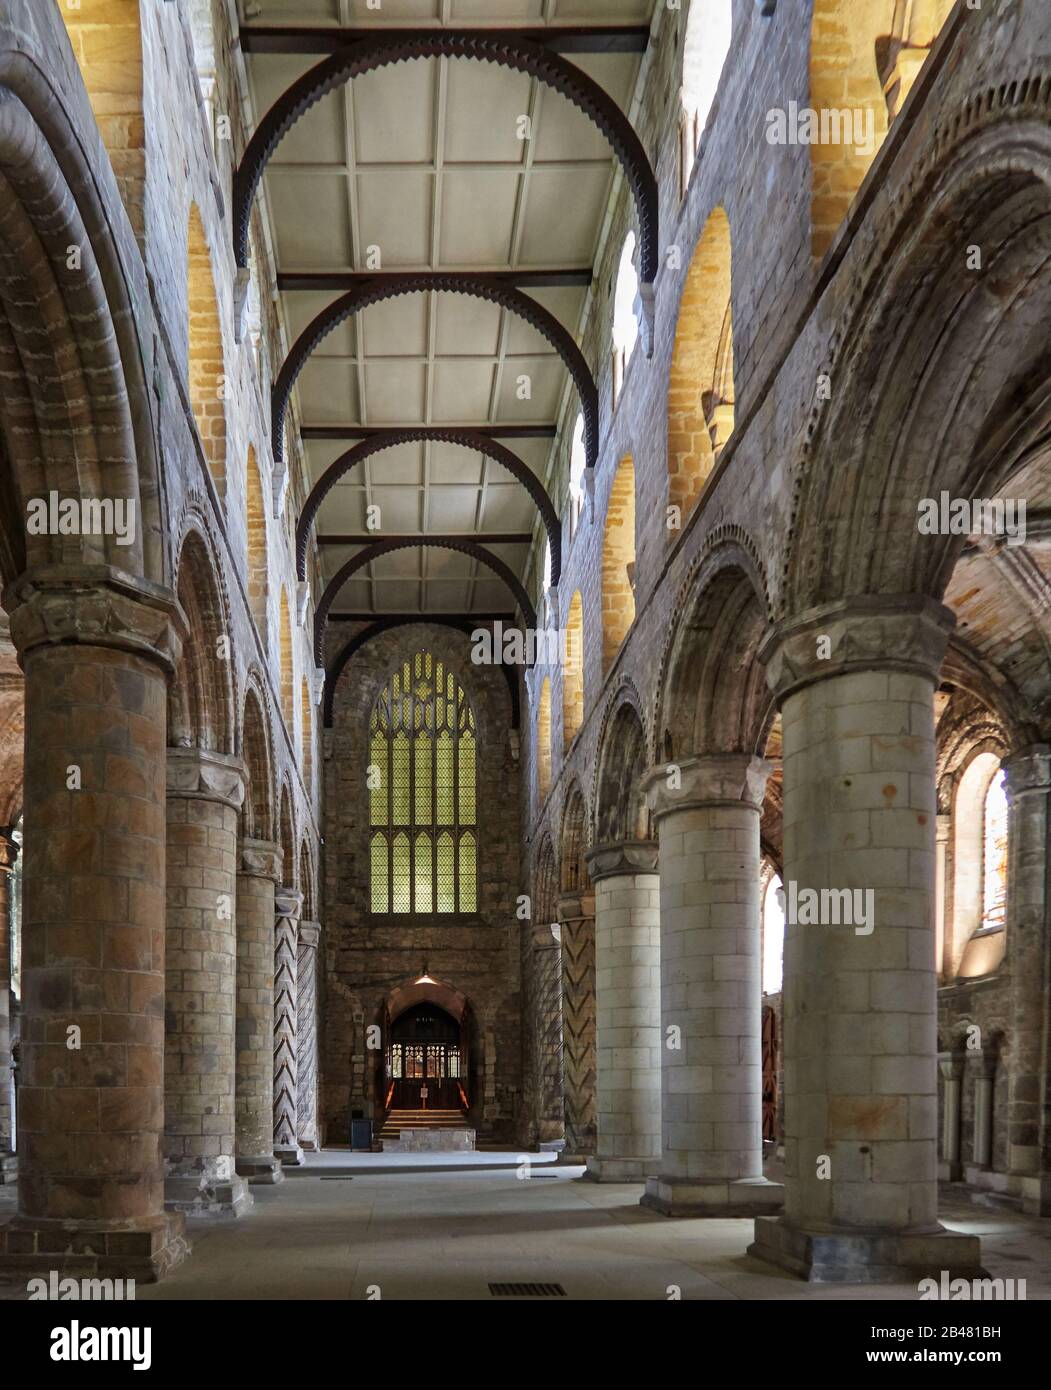 Die dreistöckige normannische Kirche Dunfermline Abbey, in der Robert the Bruce begraben ist, Dunfermline, Fife, Schottland, Großbritannien, Europa, wurde im 12. Jahrhundert erbaut Stockfoto